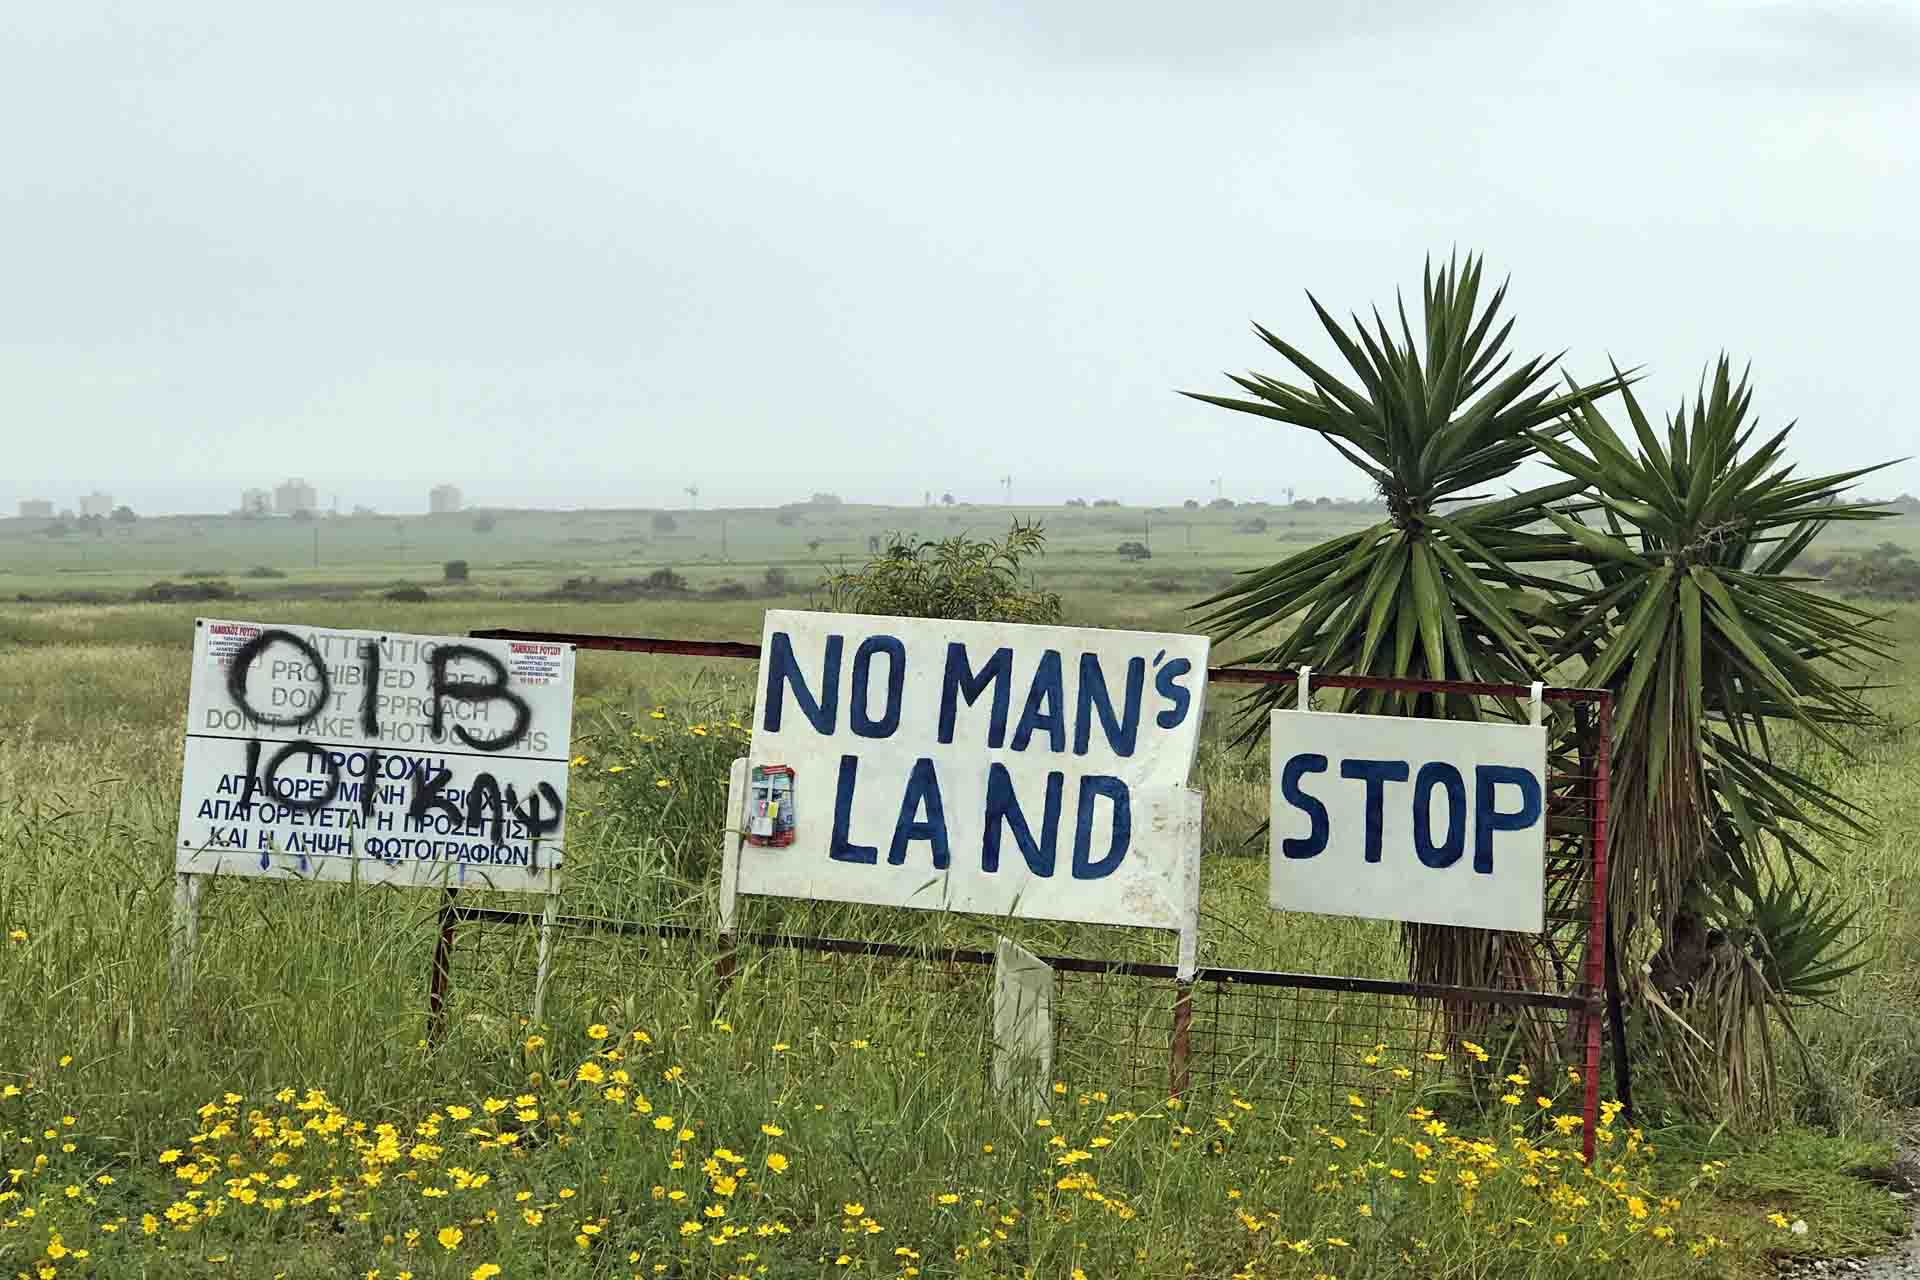 Letreros caseros que advierten de una zona colchón minada en Chipre / Foto: Capitán Swing